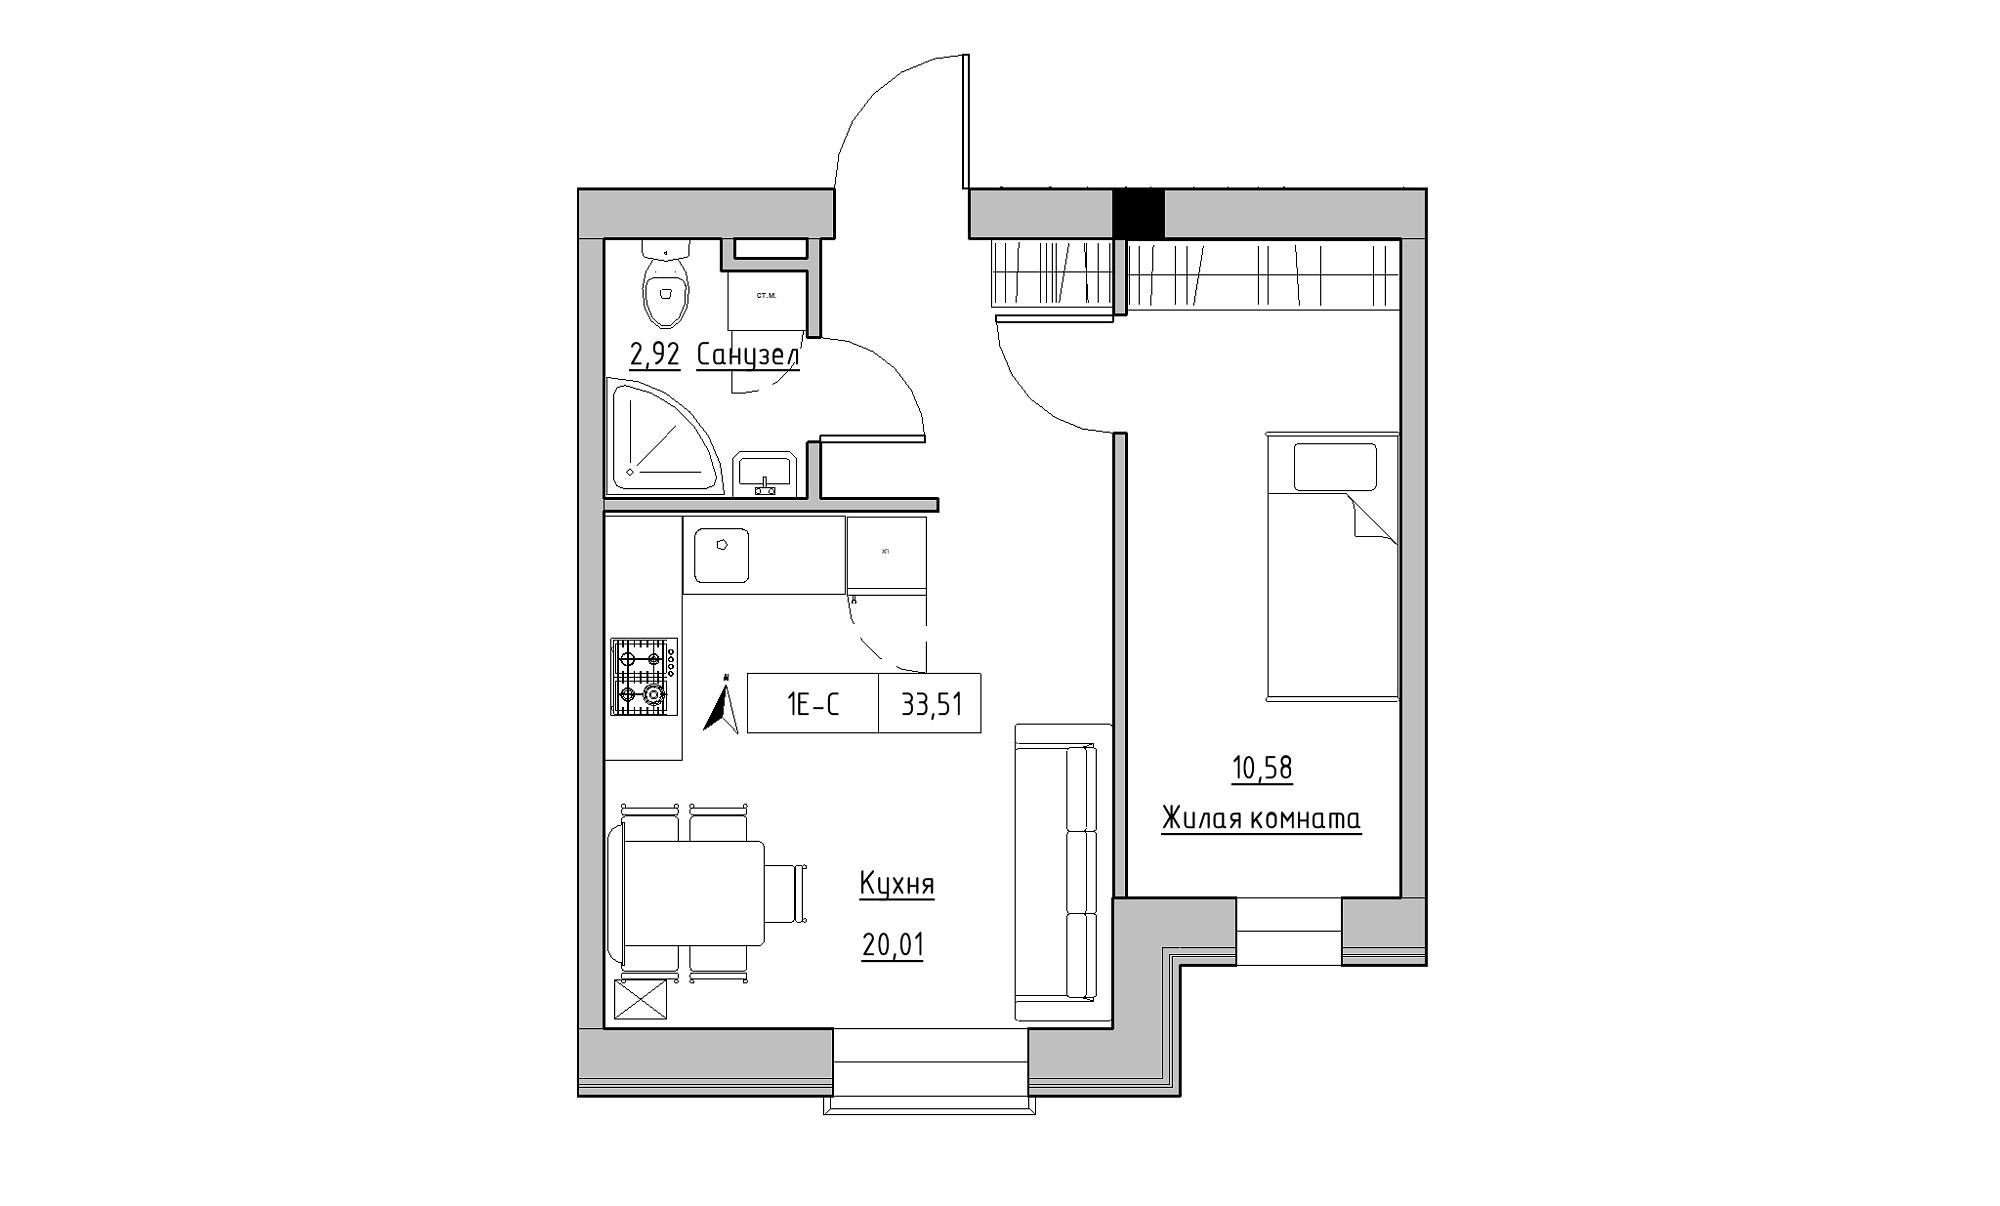 Планування 1-к квартира площею 33.51м2, KS-023-01/0009.